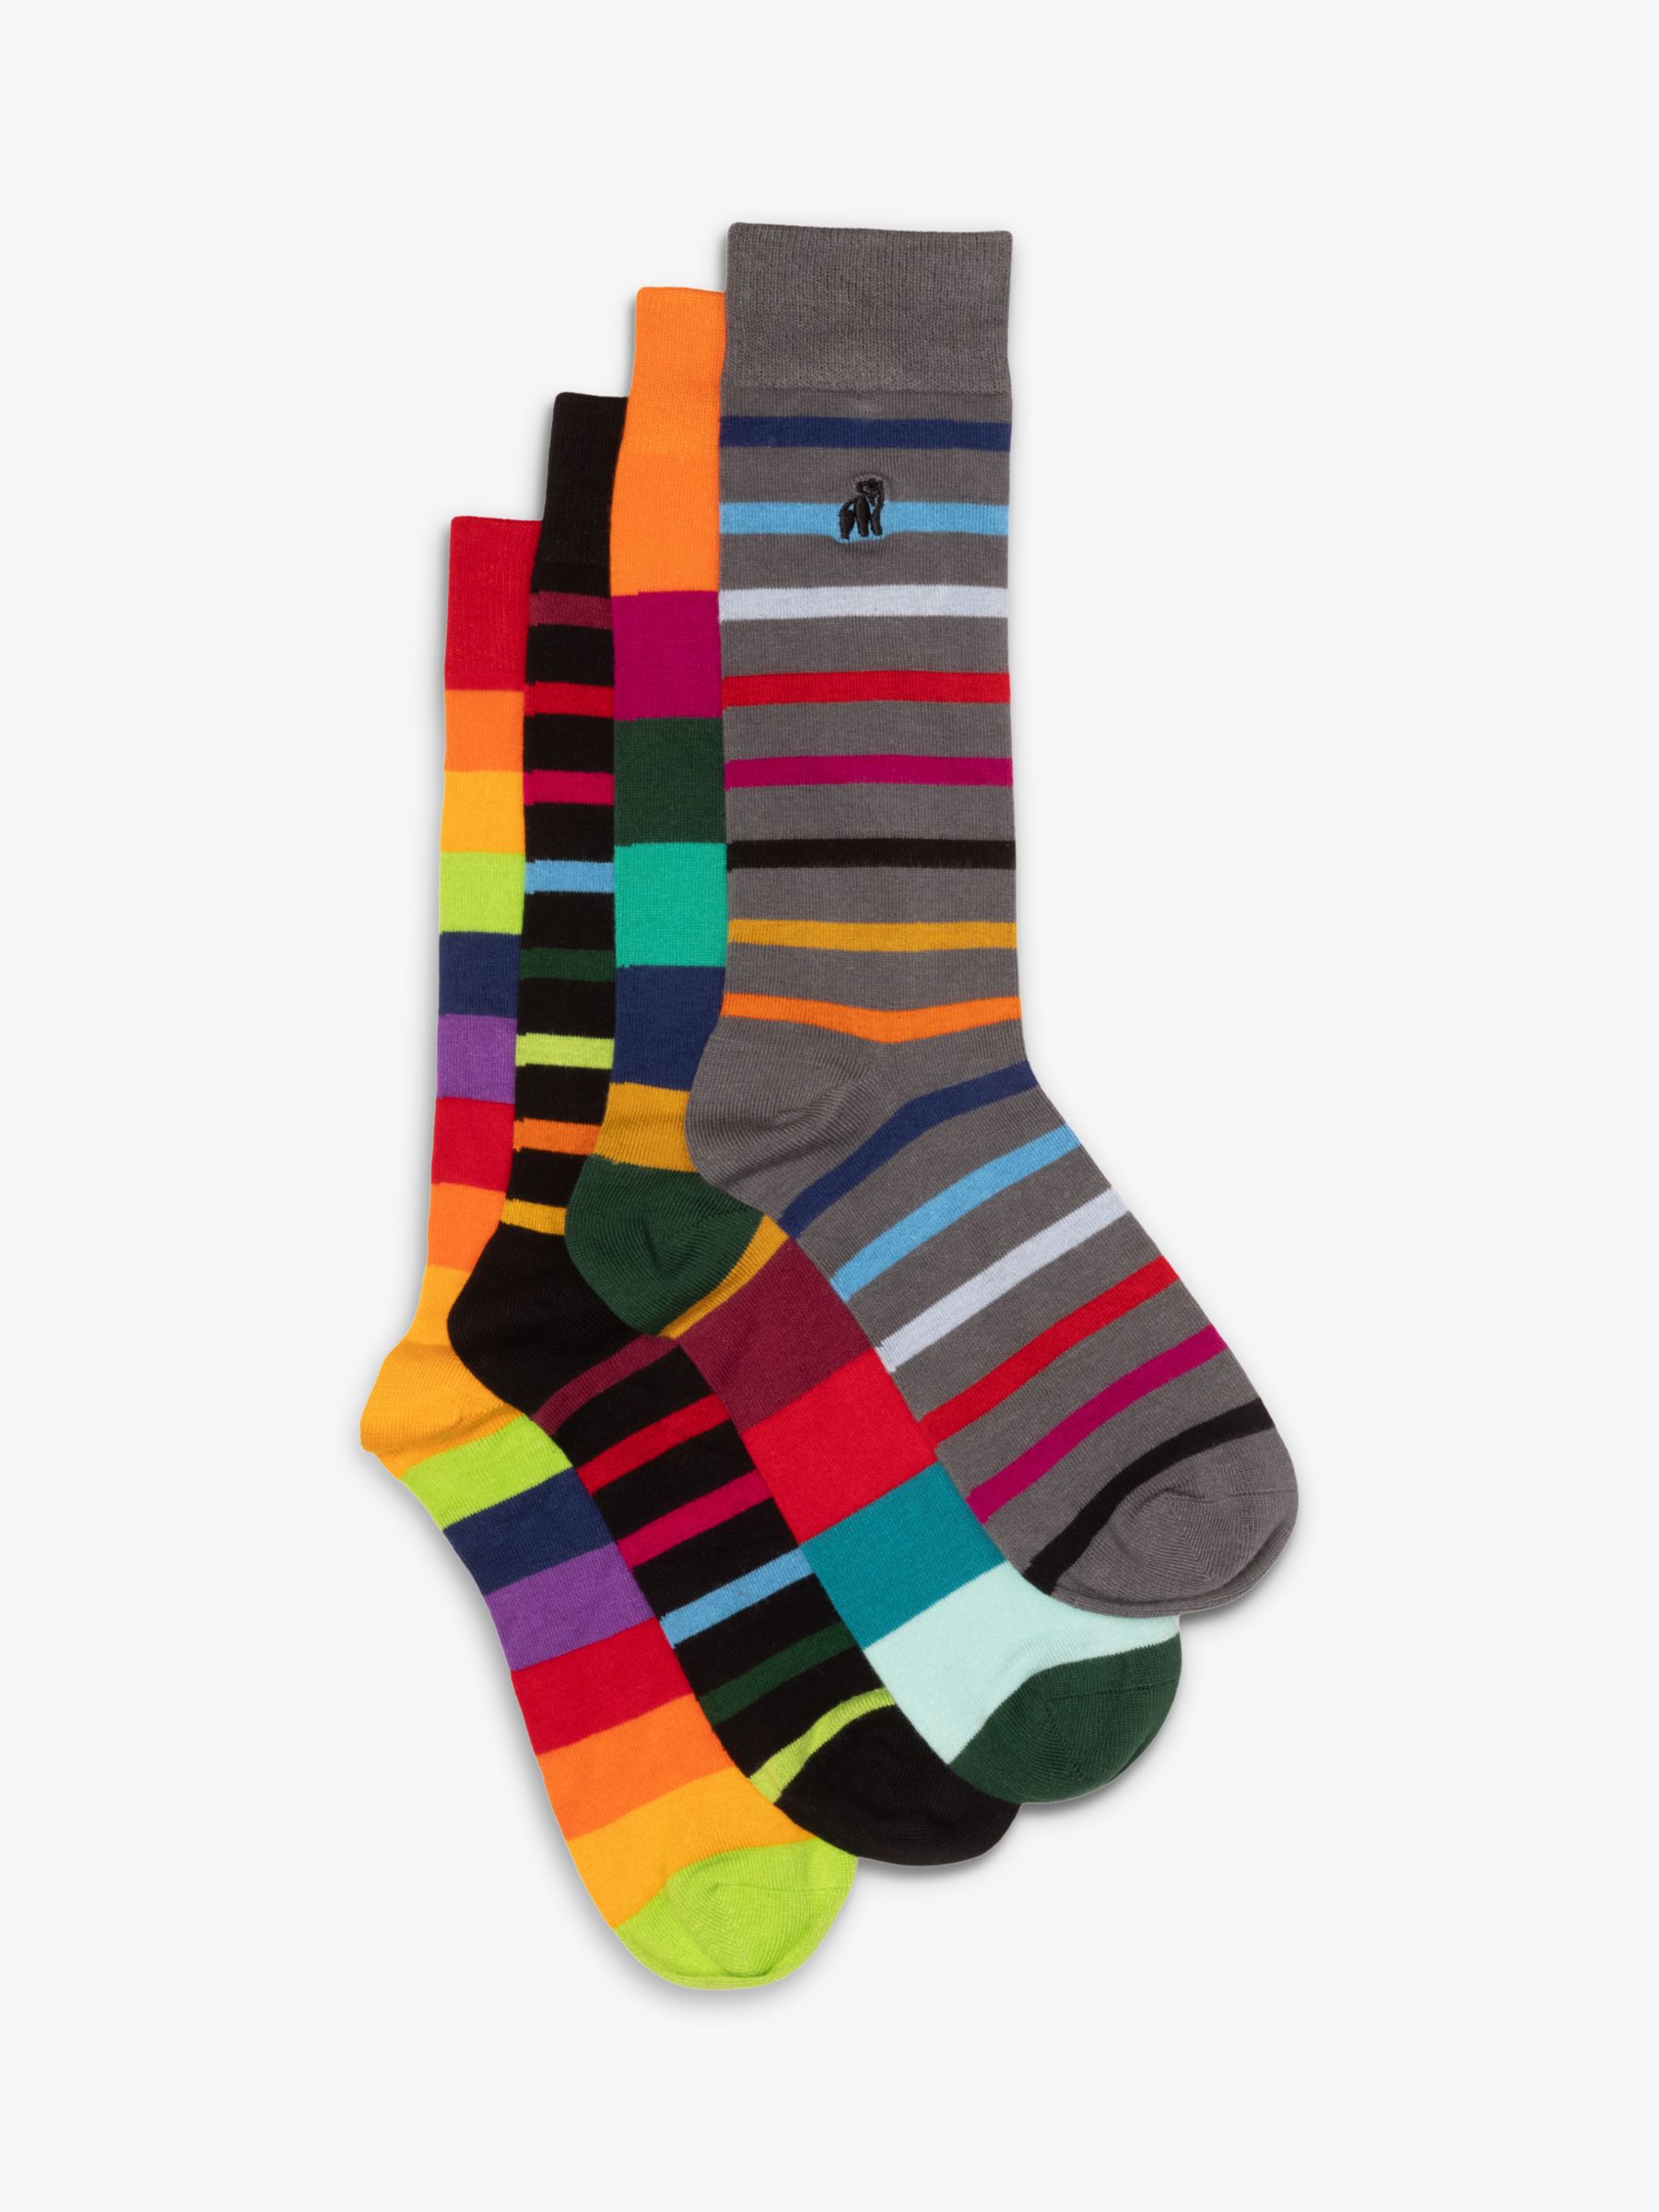 Jefferies Socks Boys' Funky Stripe Crew Socks 3 Pair Pack, Multi